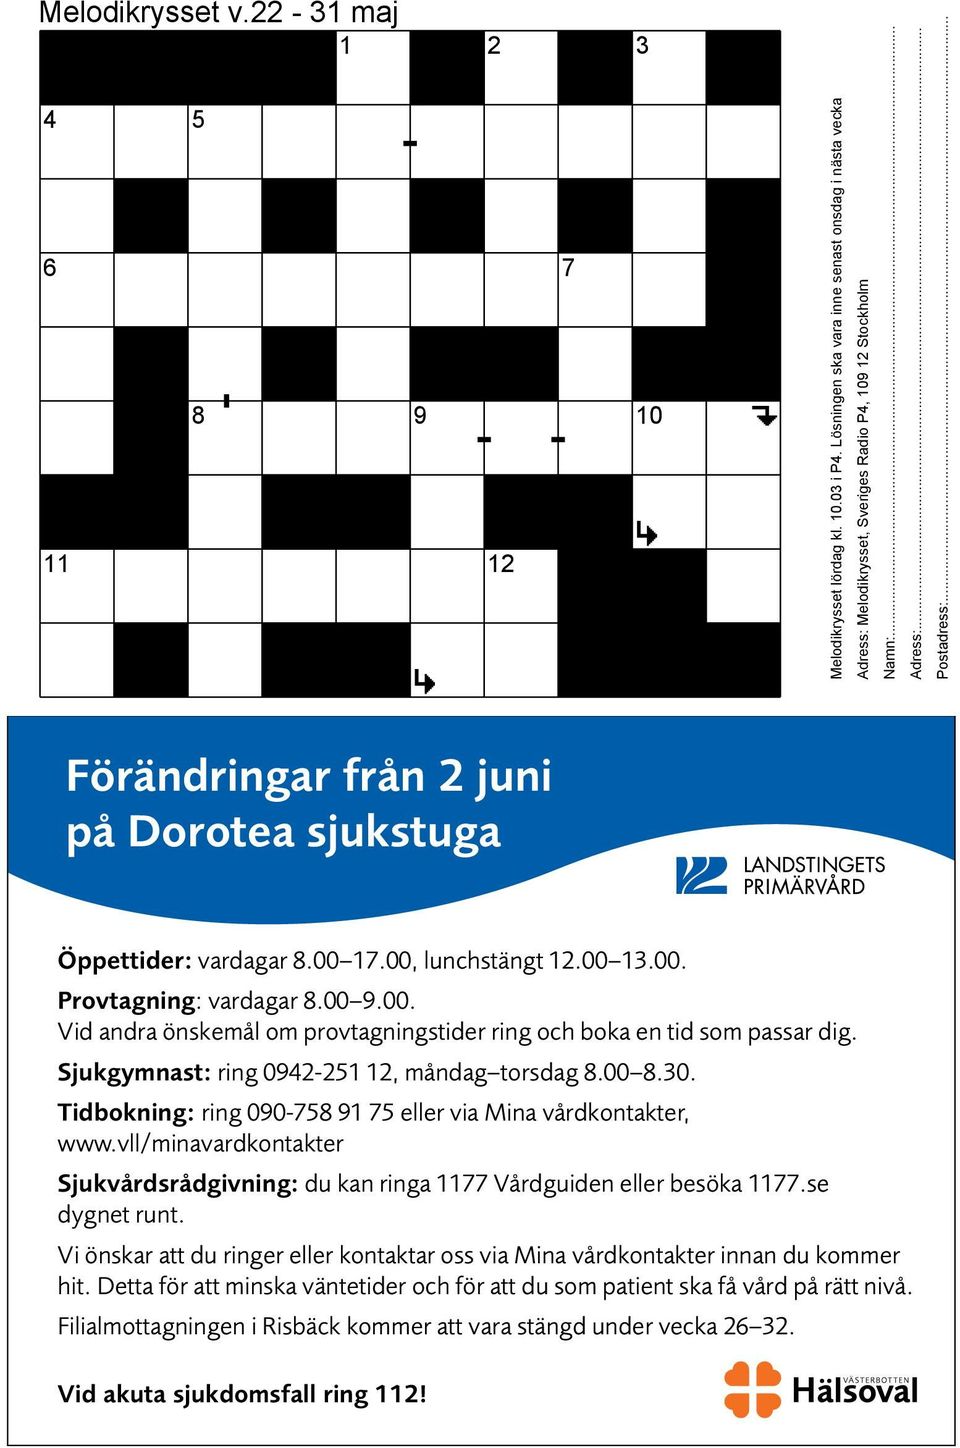 Lösningen ska vara inne senast onsdag i nästa vecka Förändringar från 2 juni på Dorotea sjukstuga Adress: Melodikrysset, Sveriges Radio P4, 109 12 Stockholm Namn:... Adress:... Postadress:.